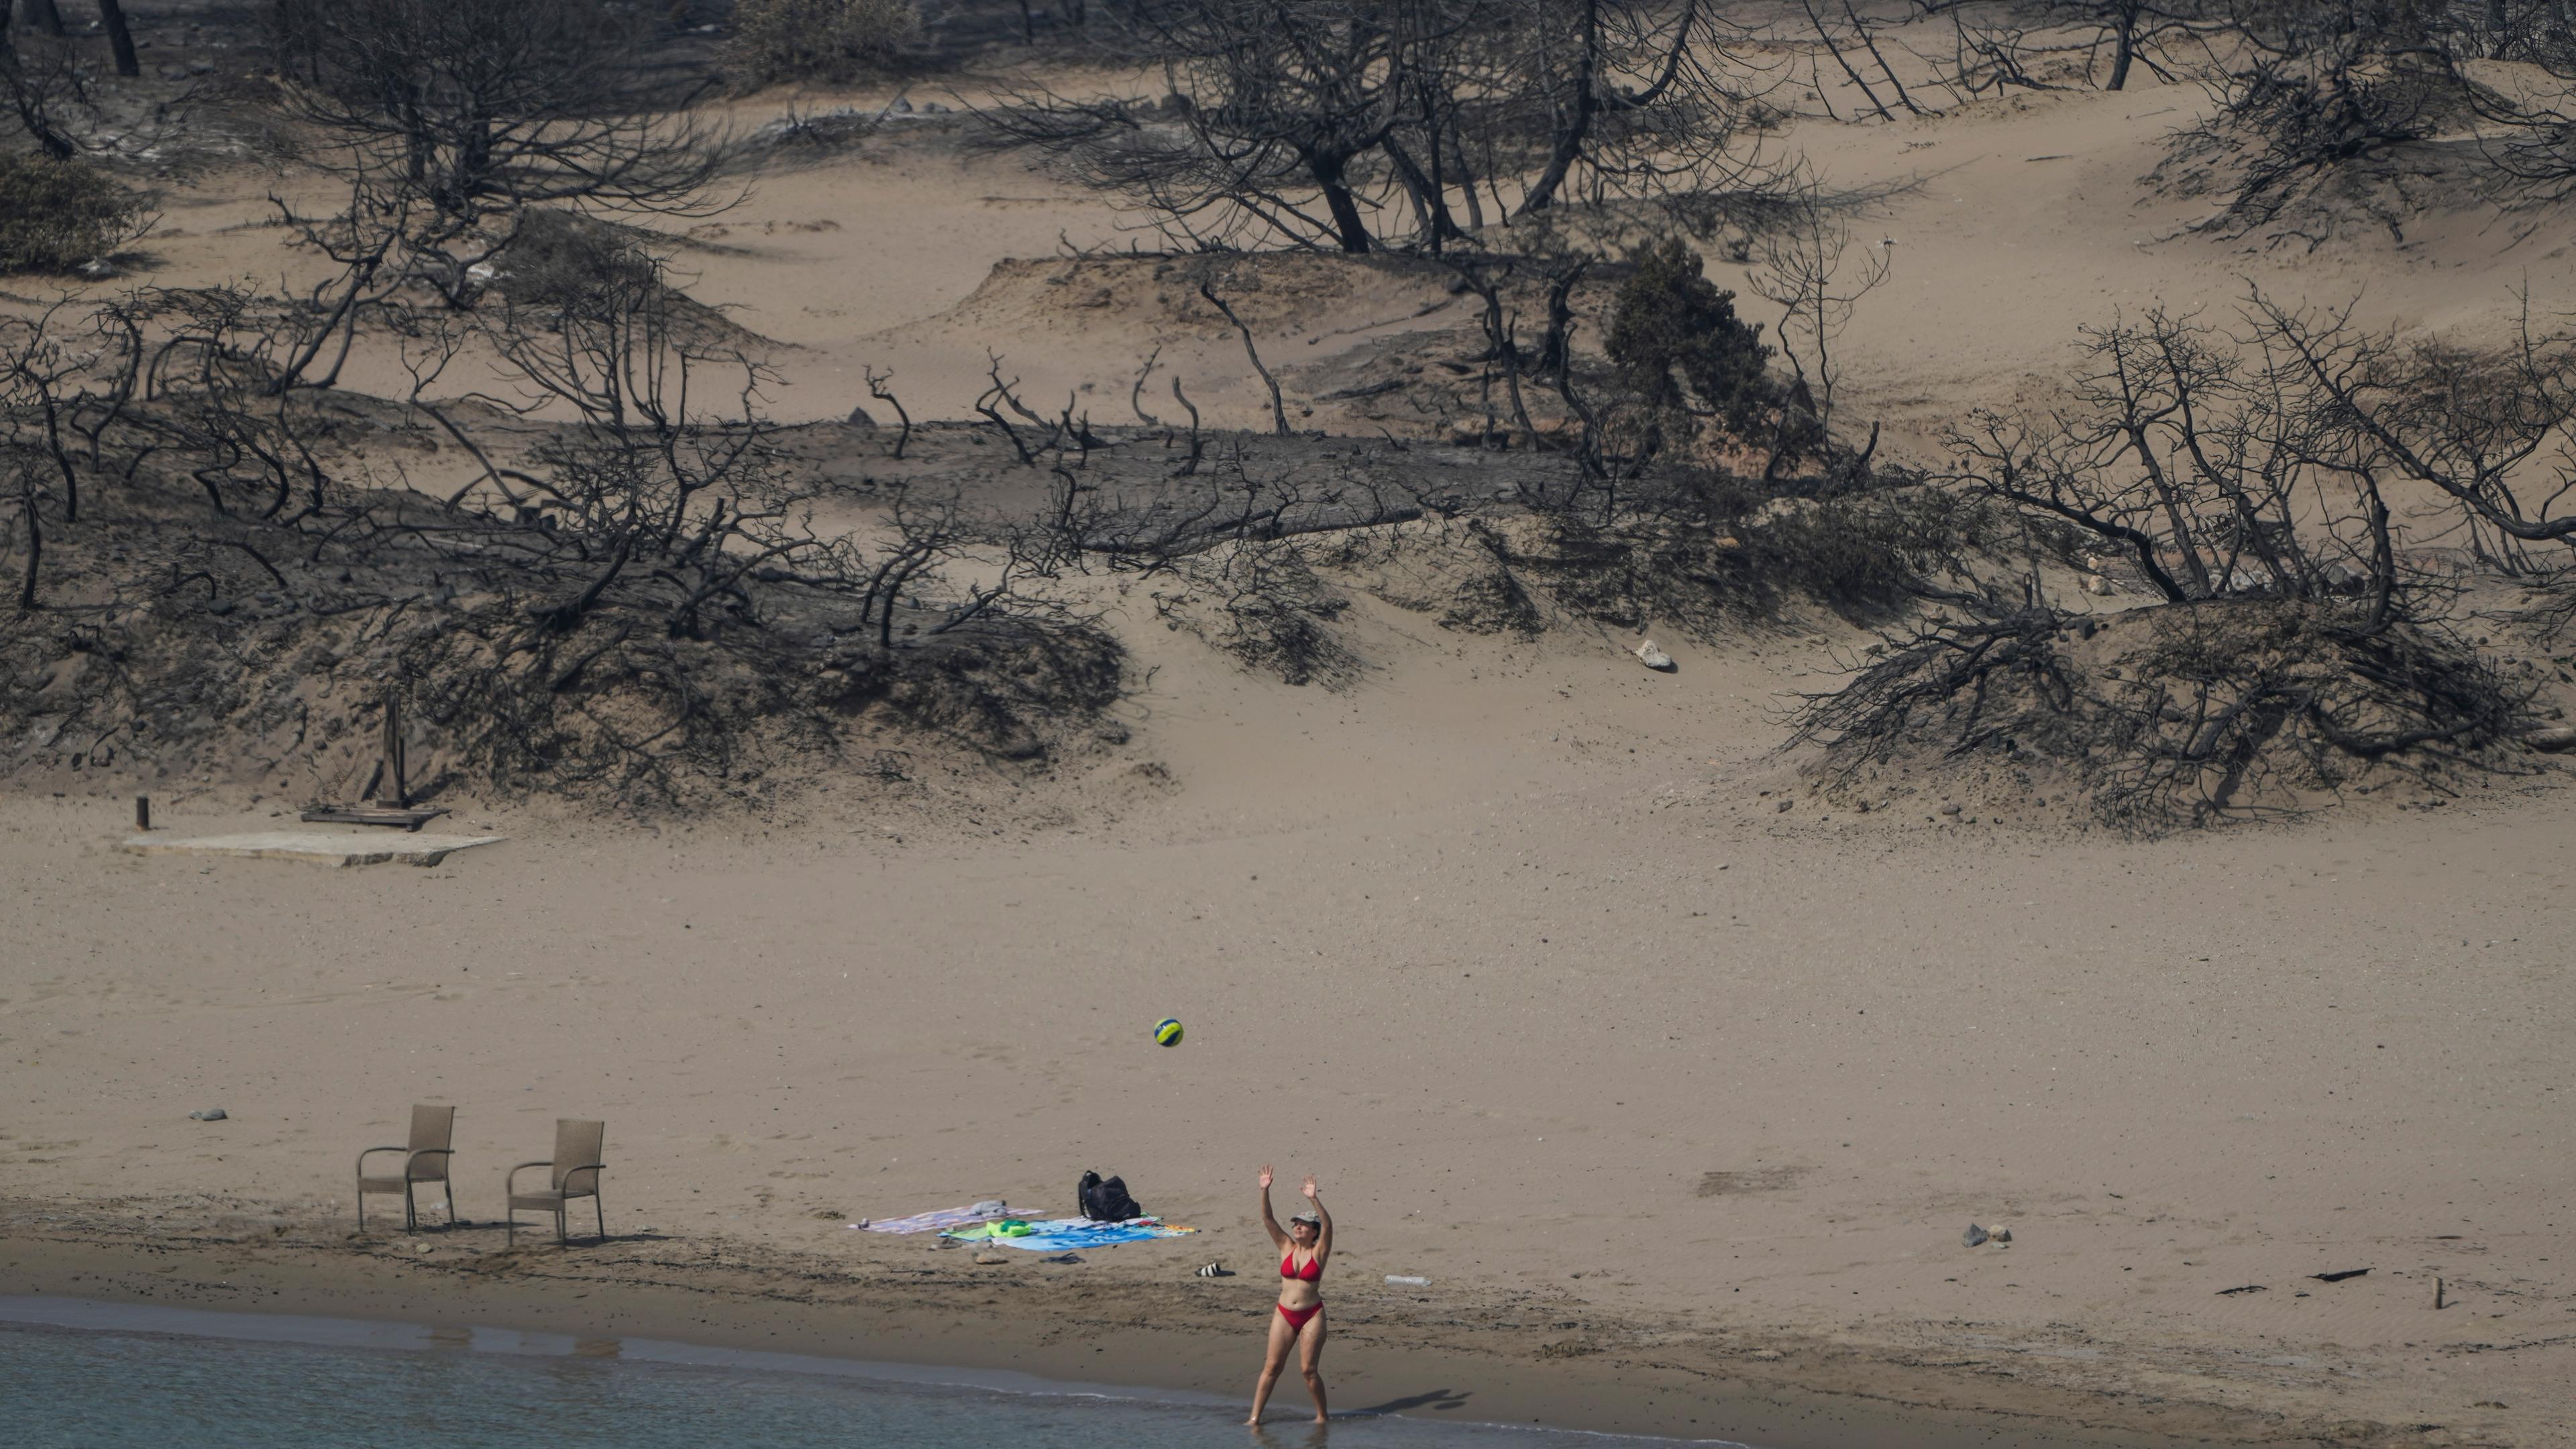 Griechenland, Rhodos: Eine Frau spielt mit einem Ball vor einem verbrannten Wald an einem Strand in der Nähe des Dorfes Gennadi.